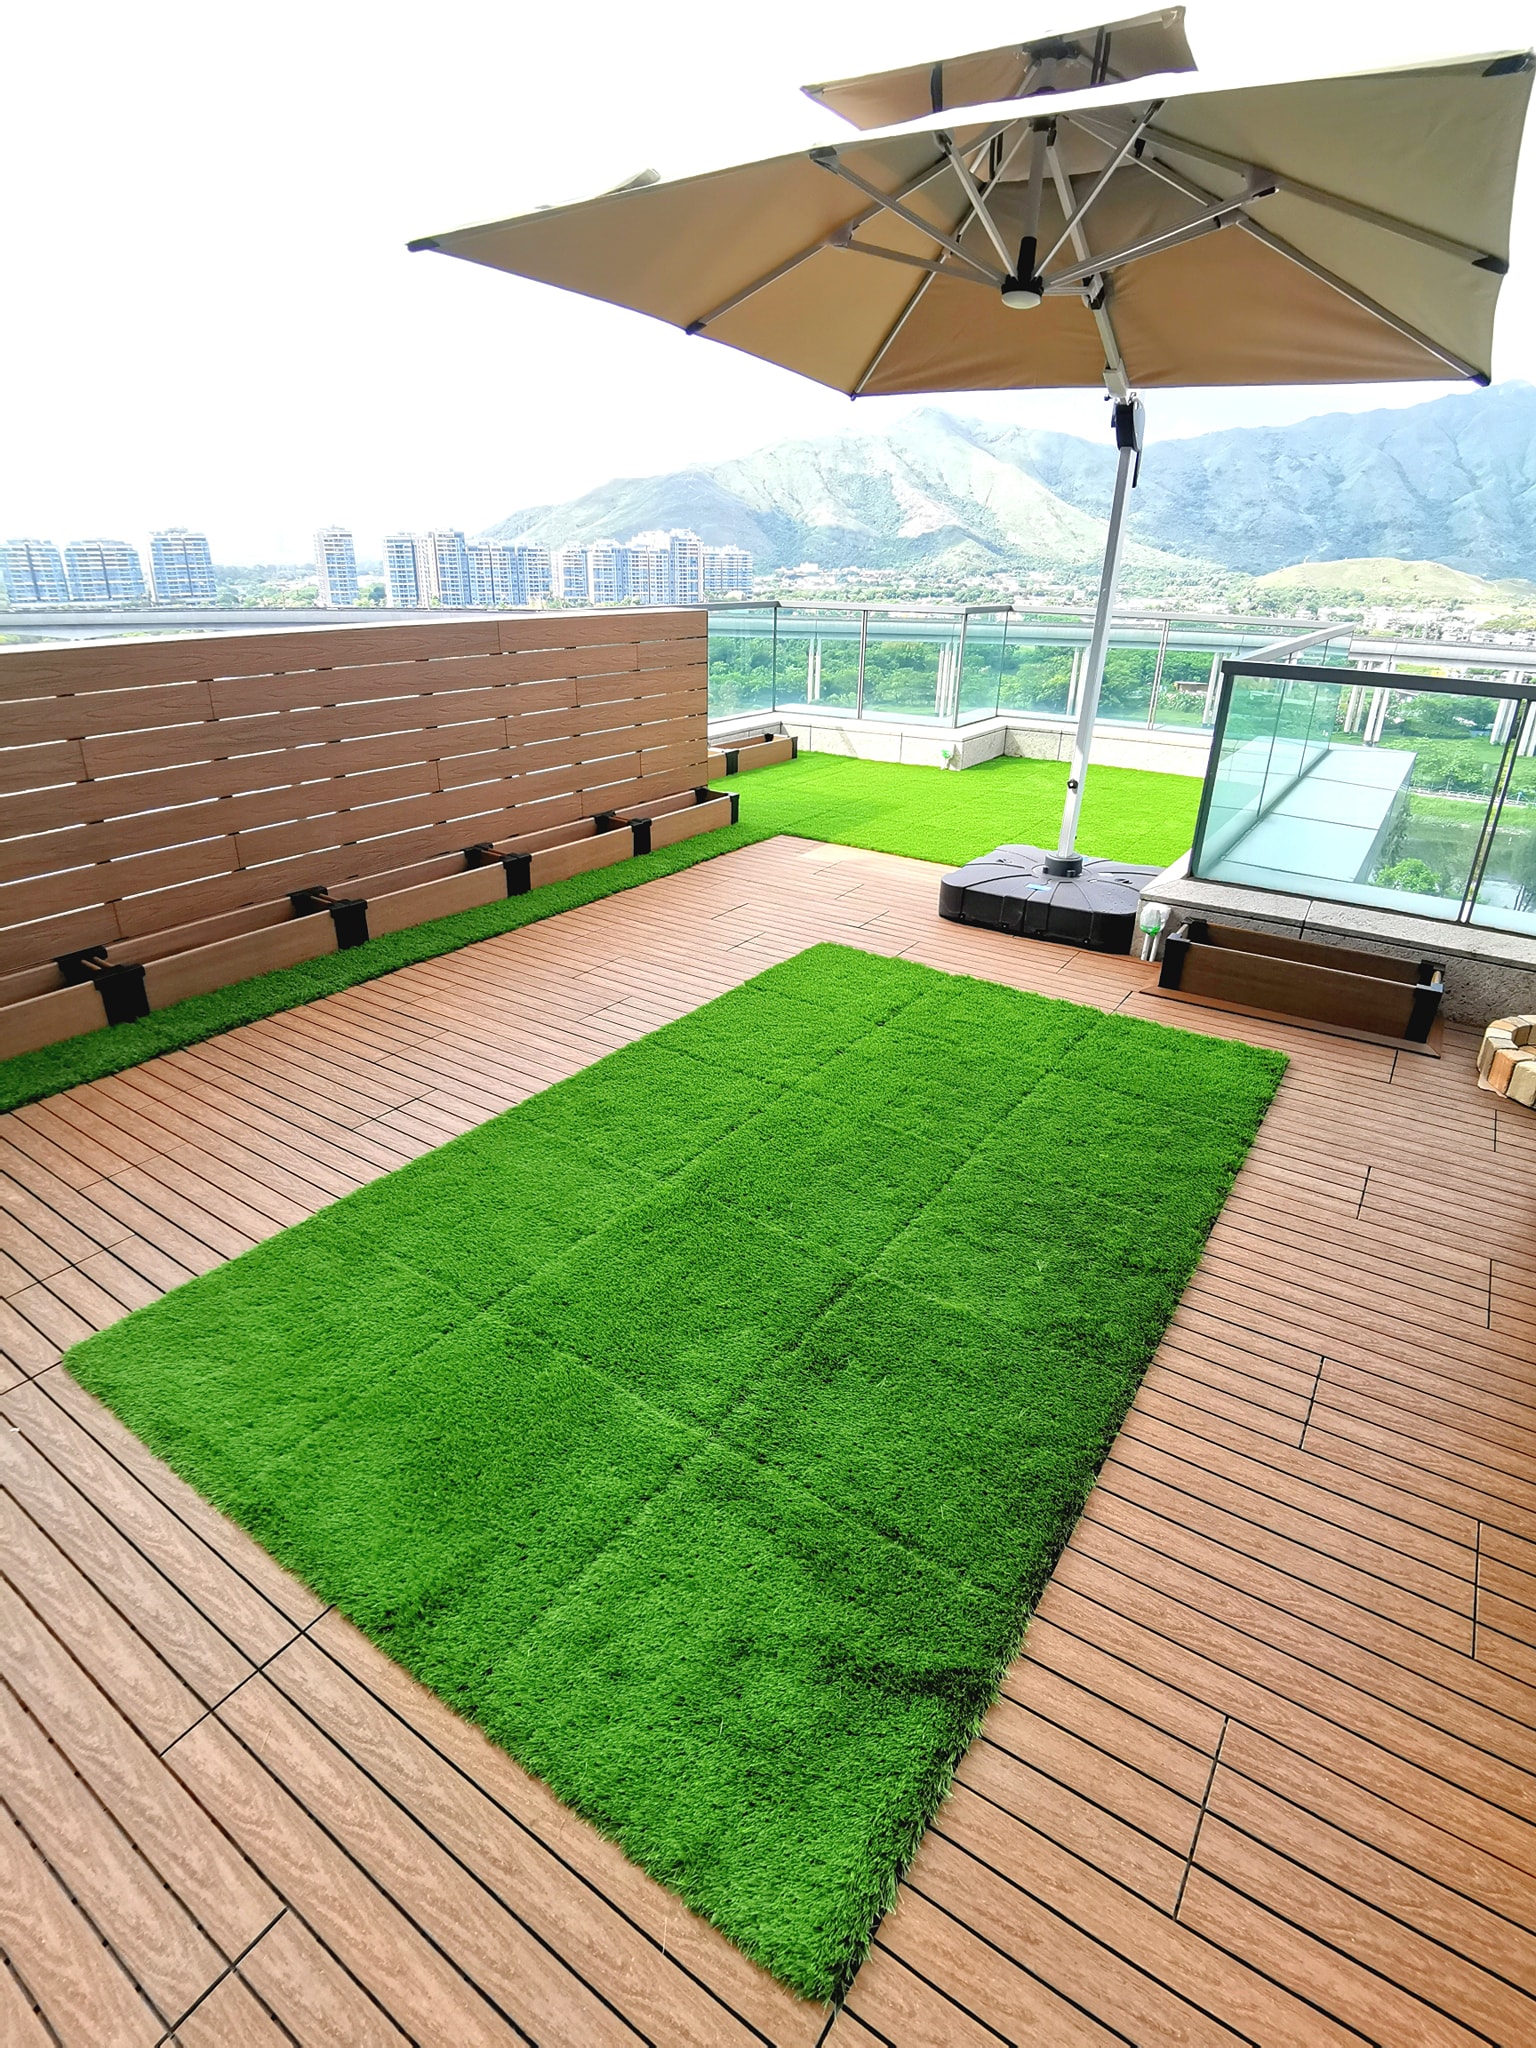 香港元朗爾巒 天台 Newtechwood 戶外地板 人造草地板 grass deck teak decktile